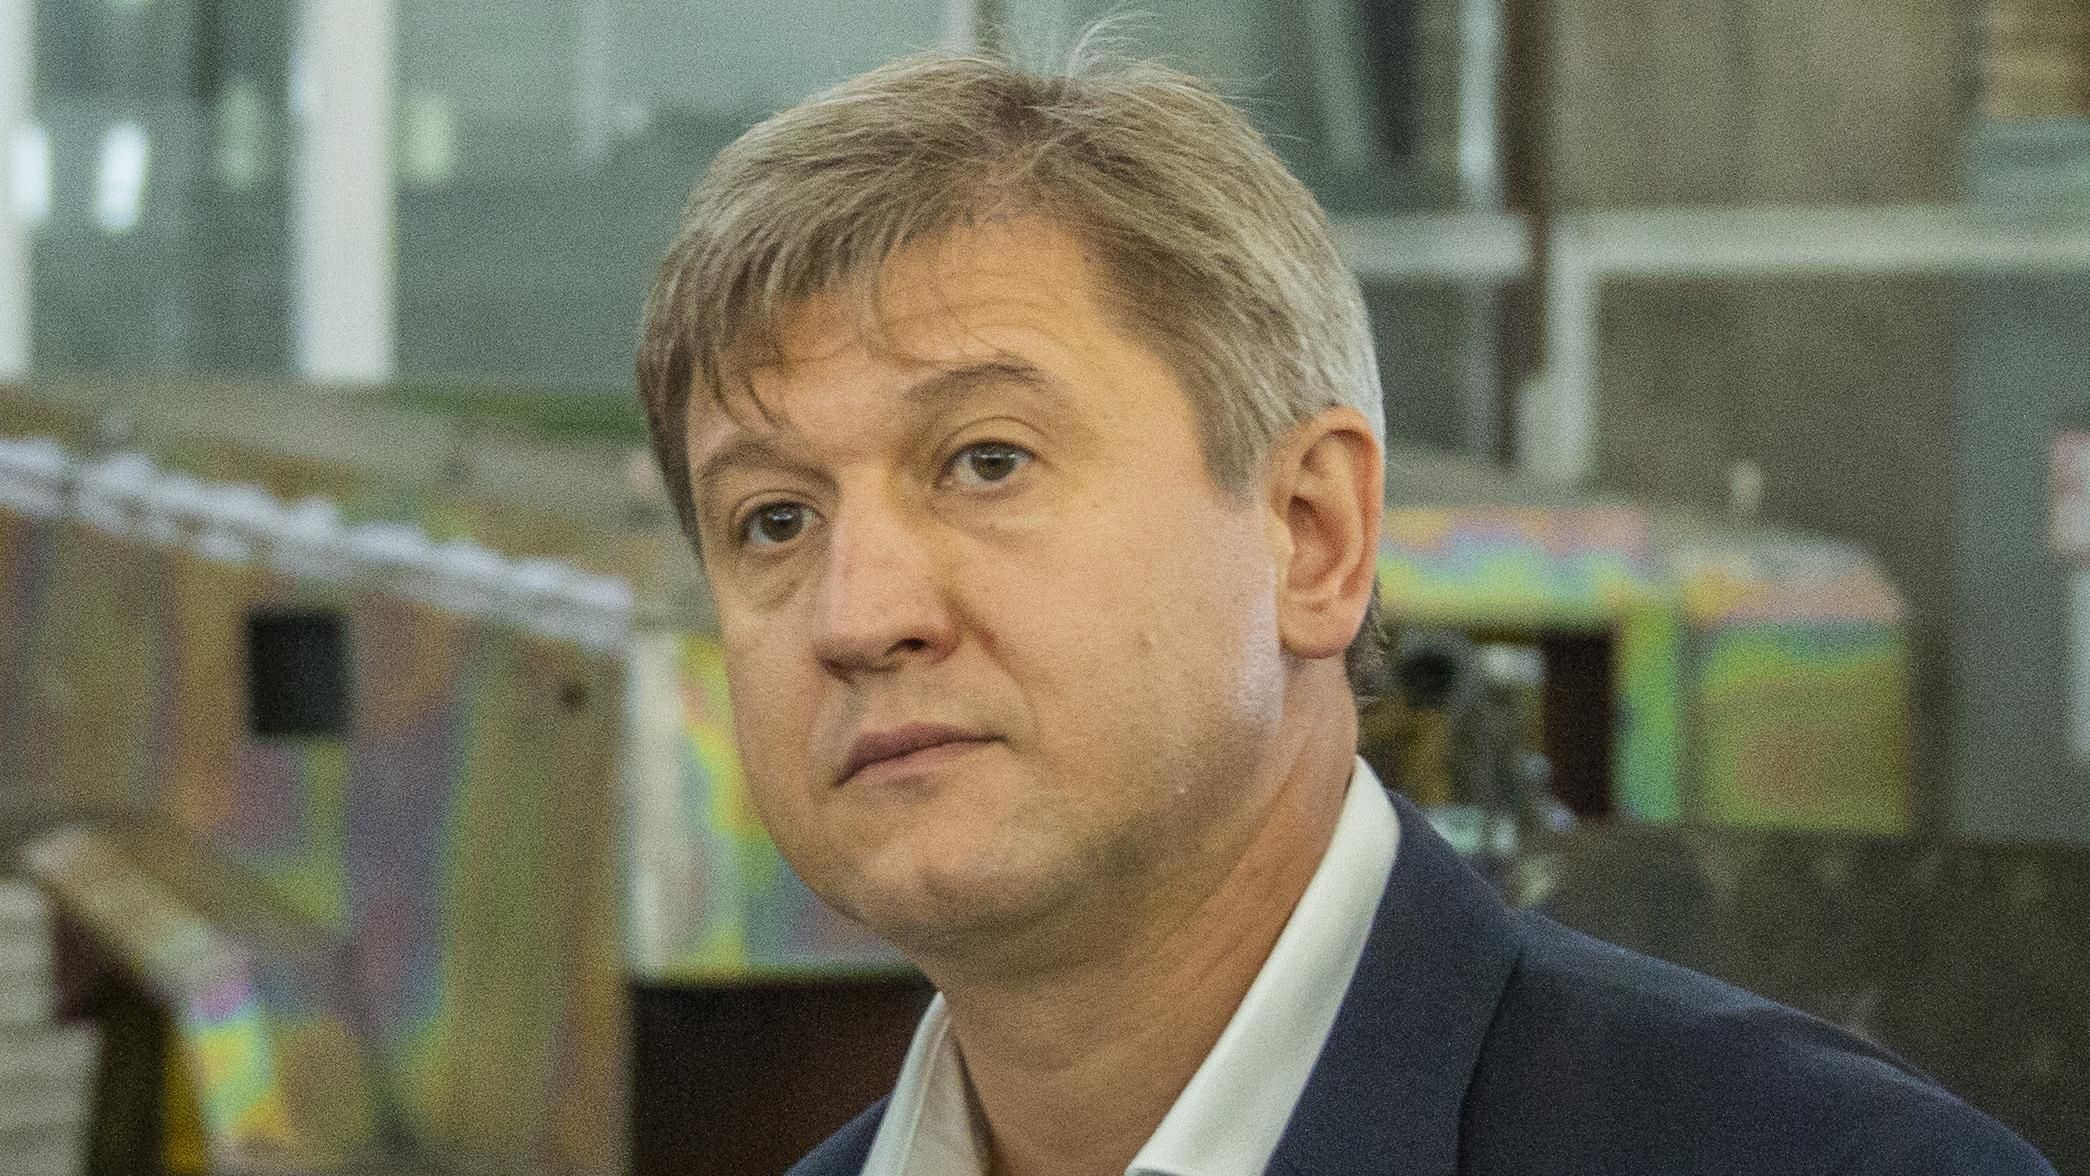 Данилюк написал заявление об увольнении из-за Зеленского, – СМИ